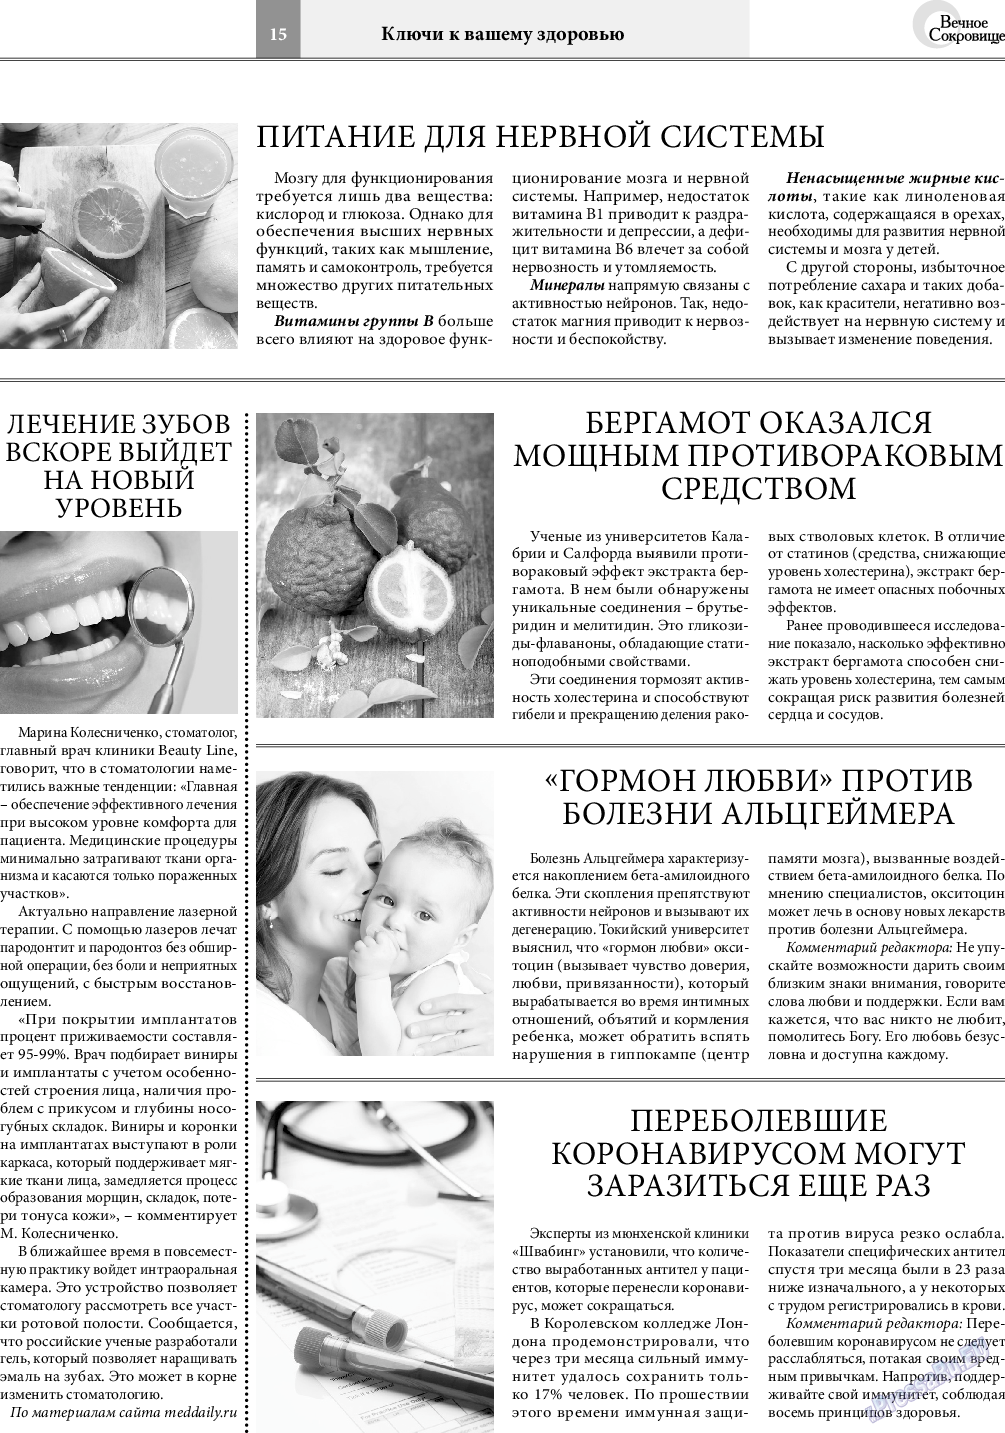 Вечное сокровище, газета. 2021 №2 стр.15